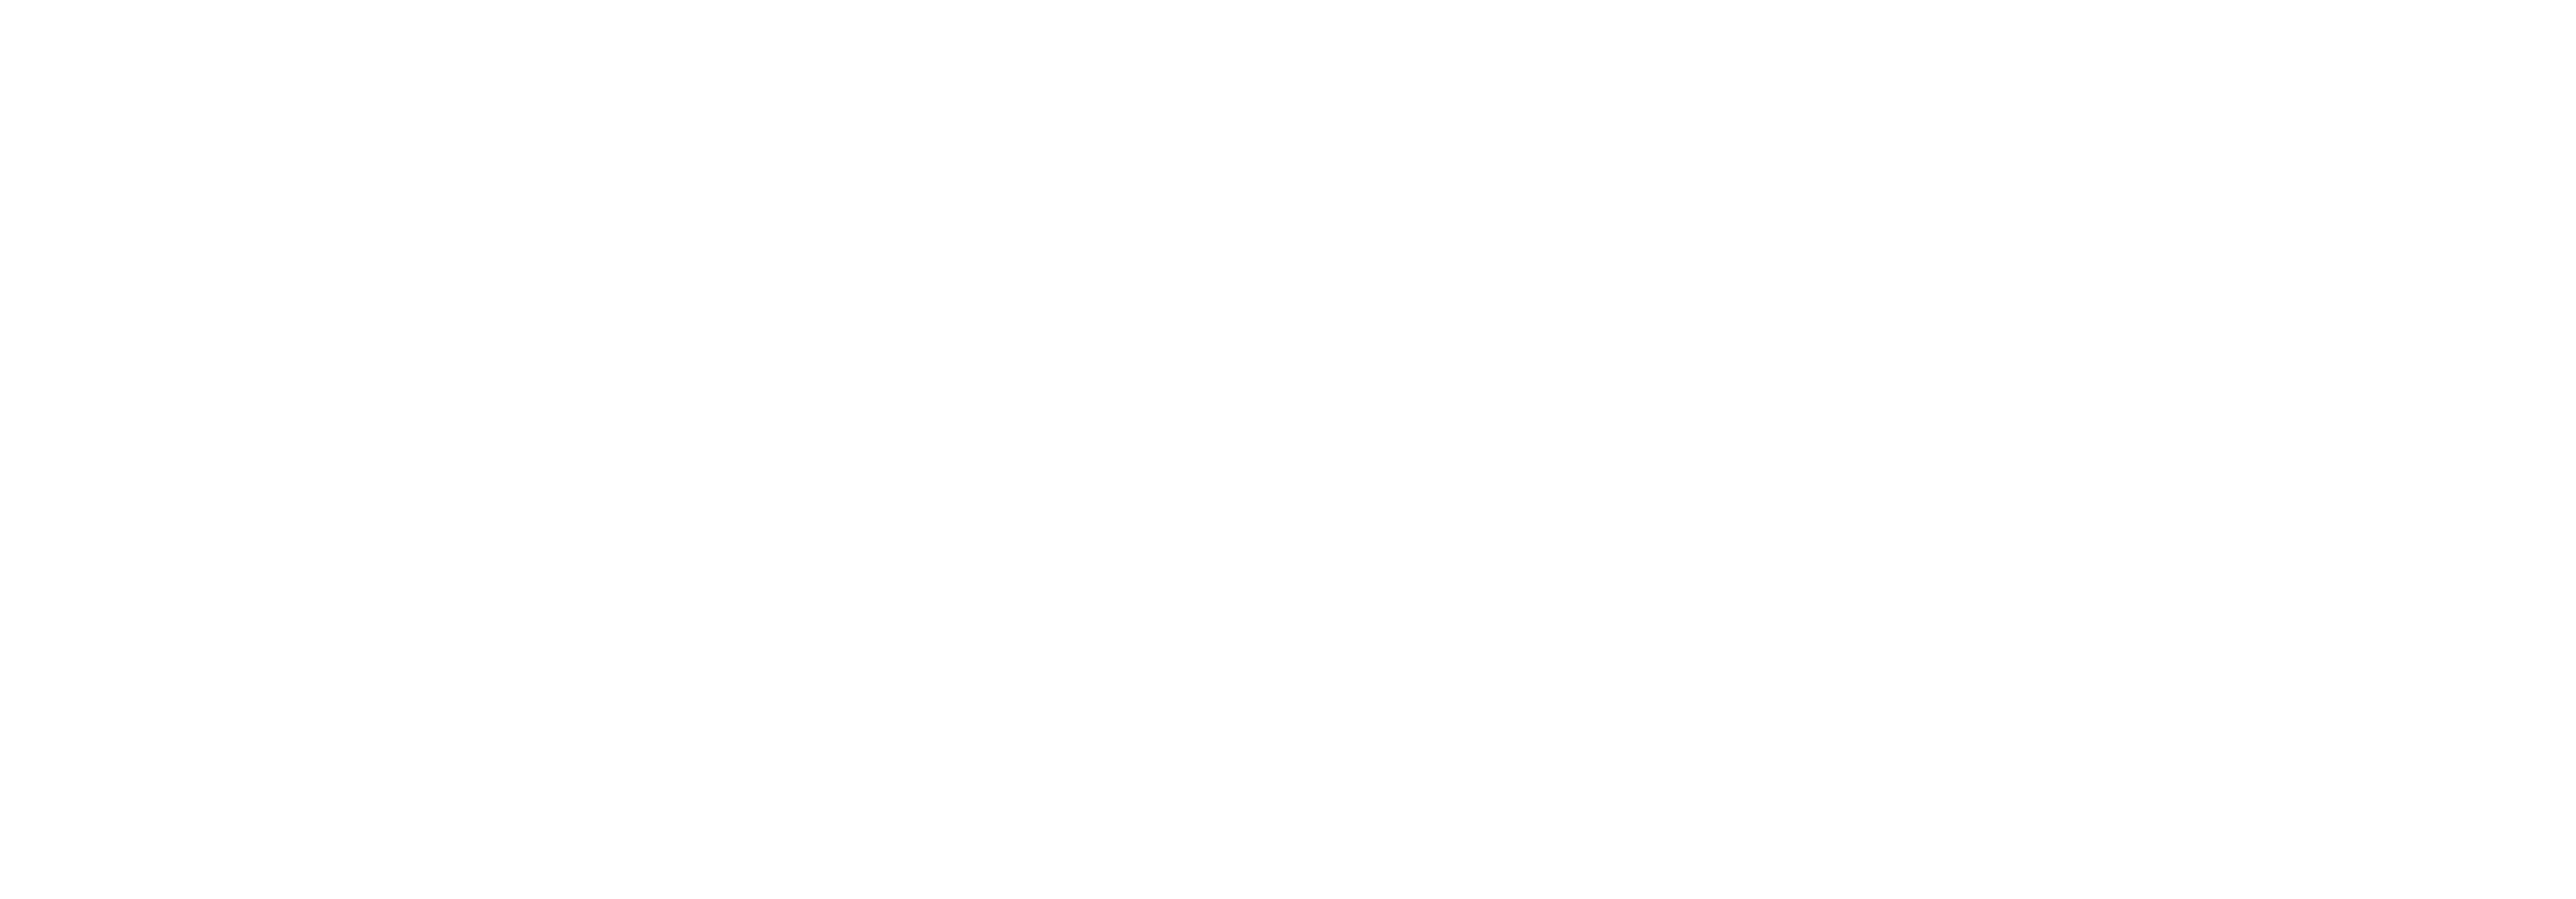 Dogma Studio